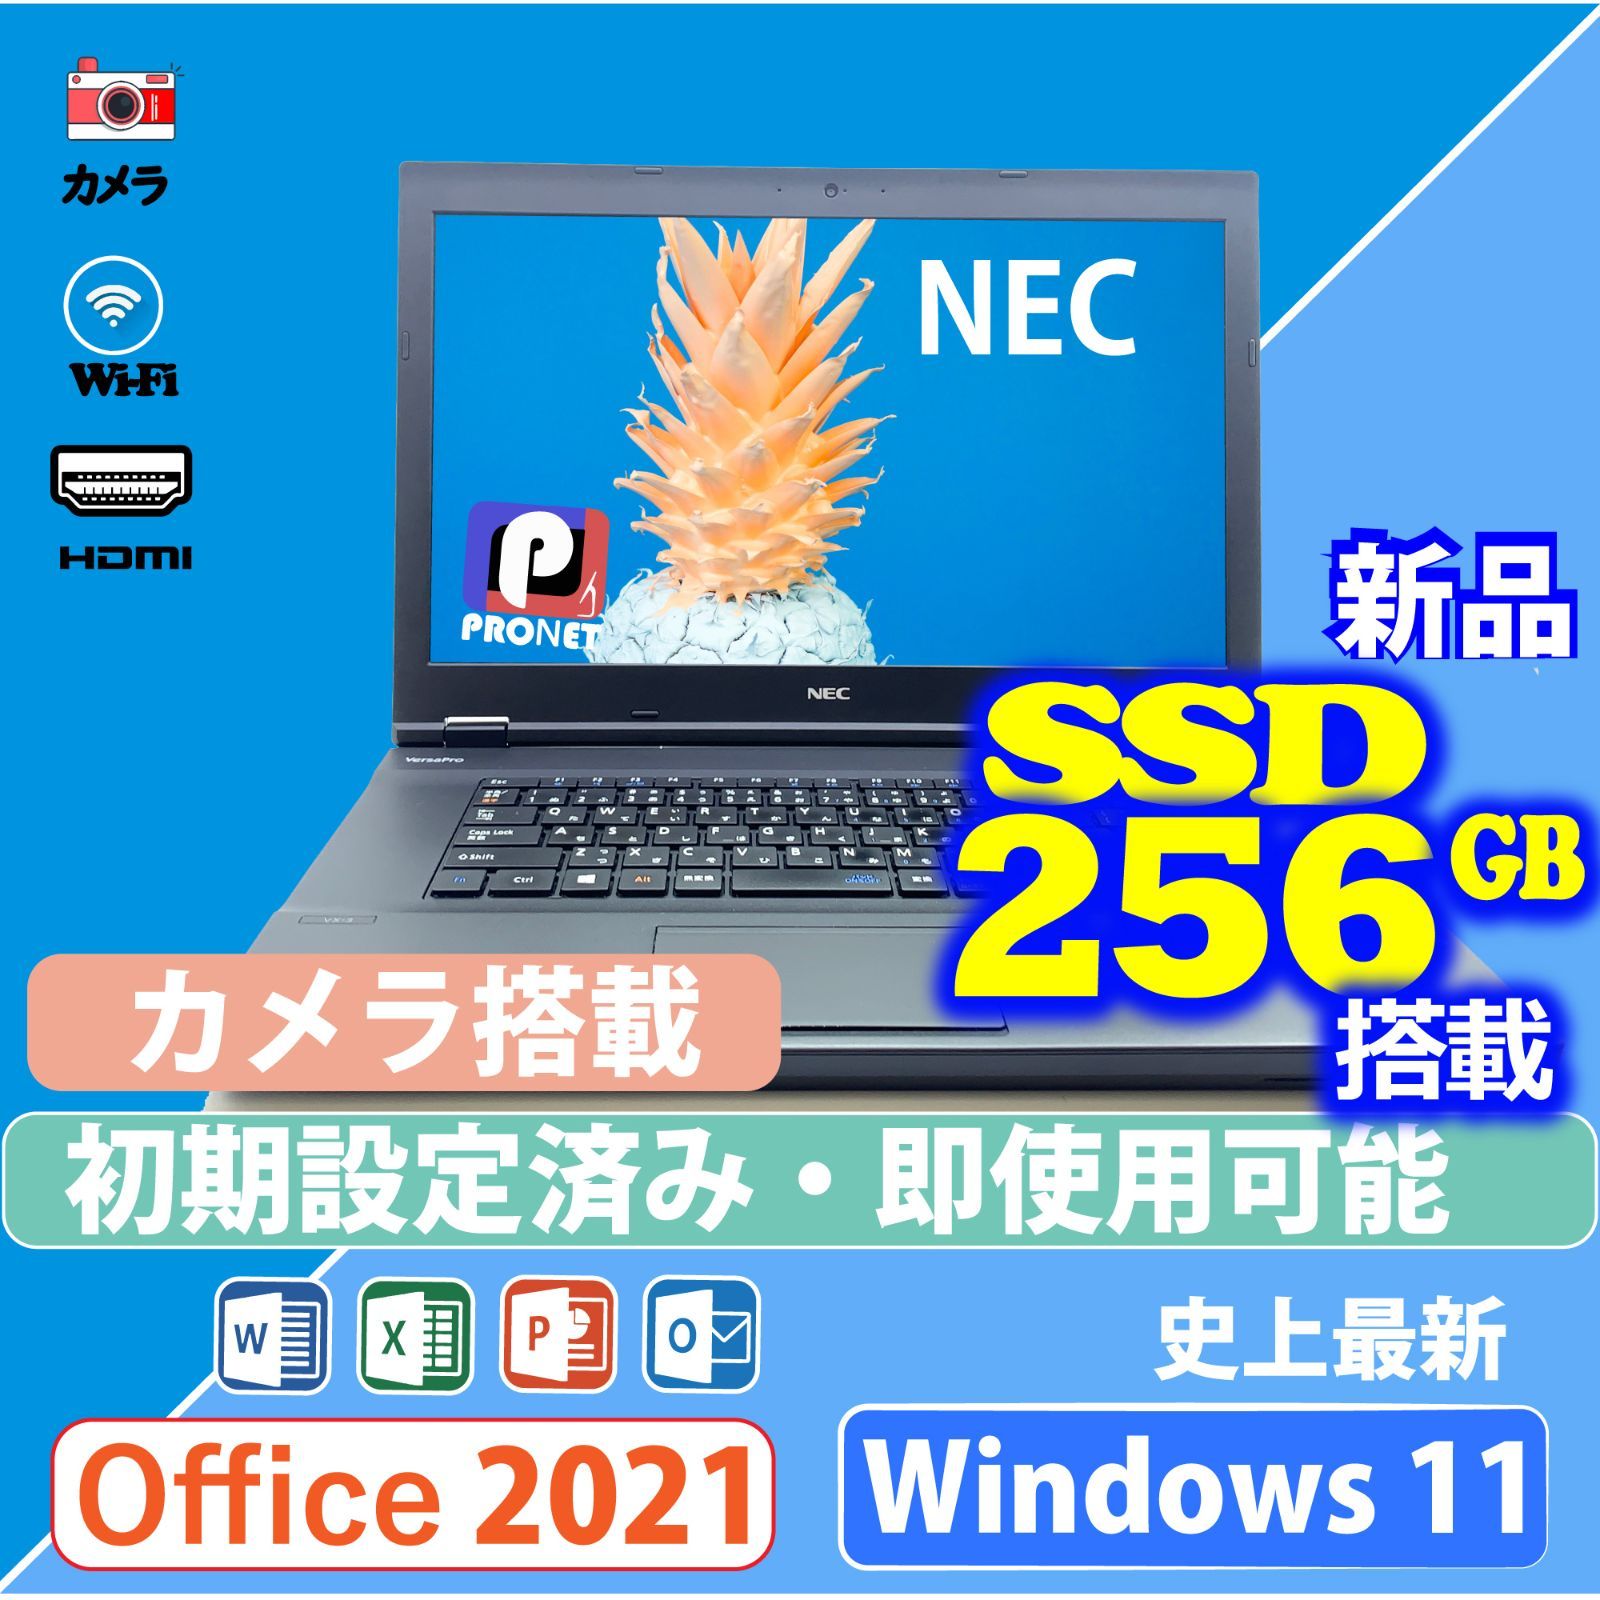 新品SSD256GB Win11 ノートパソコン Word/Excel/PowerPoint 2021 [NEC VX-3] Intel Core  i3 第7世代 15.6型 WiFi HDMI 中古ノートパソコン